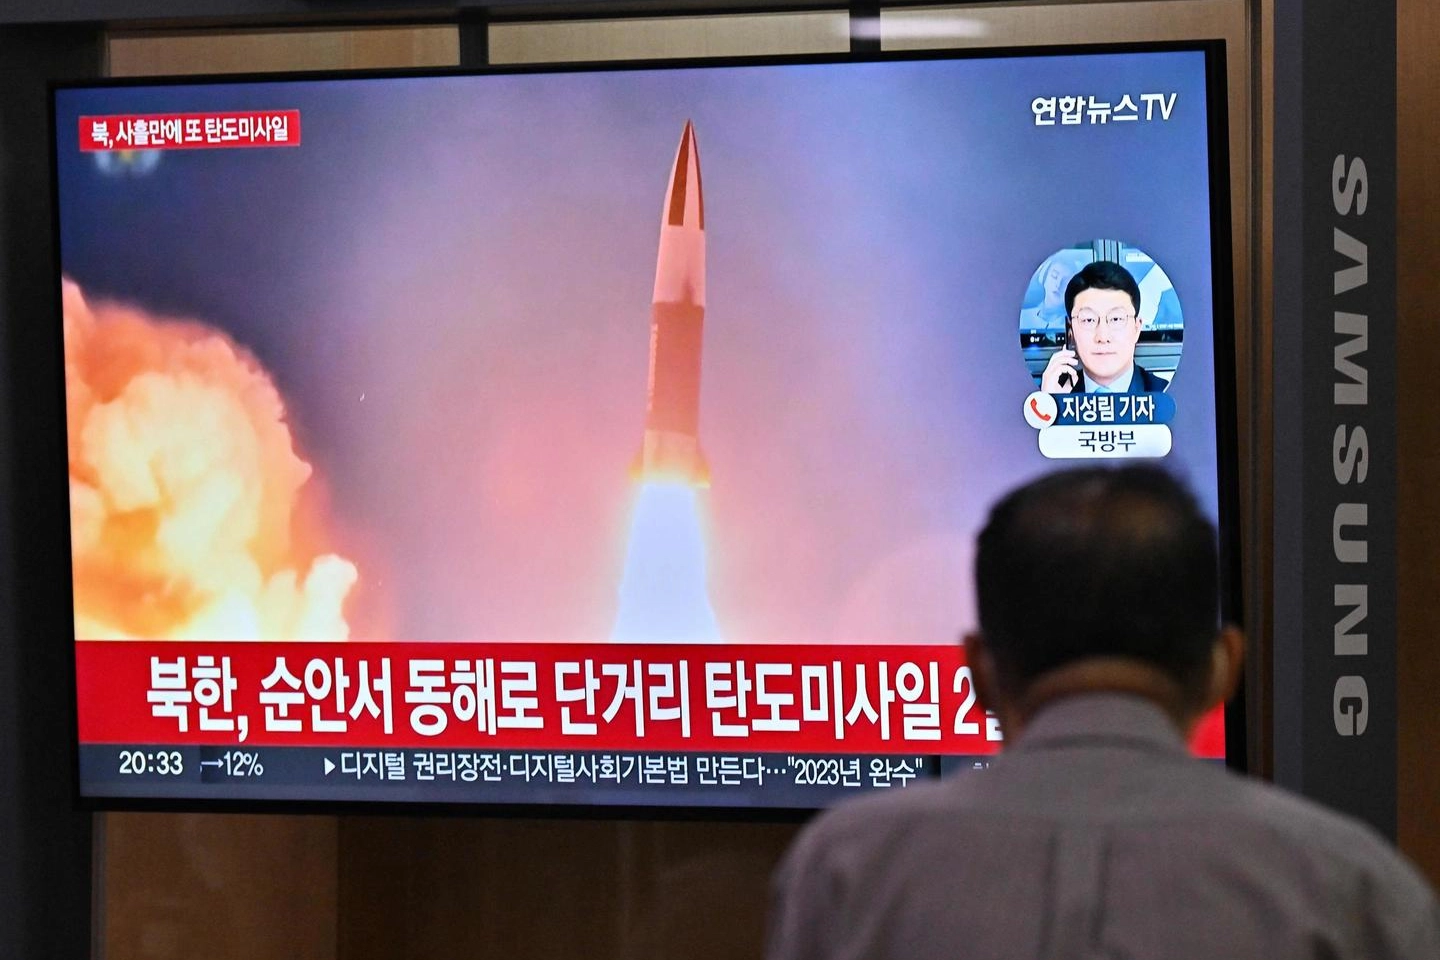 Seul, la tv mostra un test missilistico della Corea del Nord (Ansa)